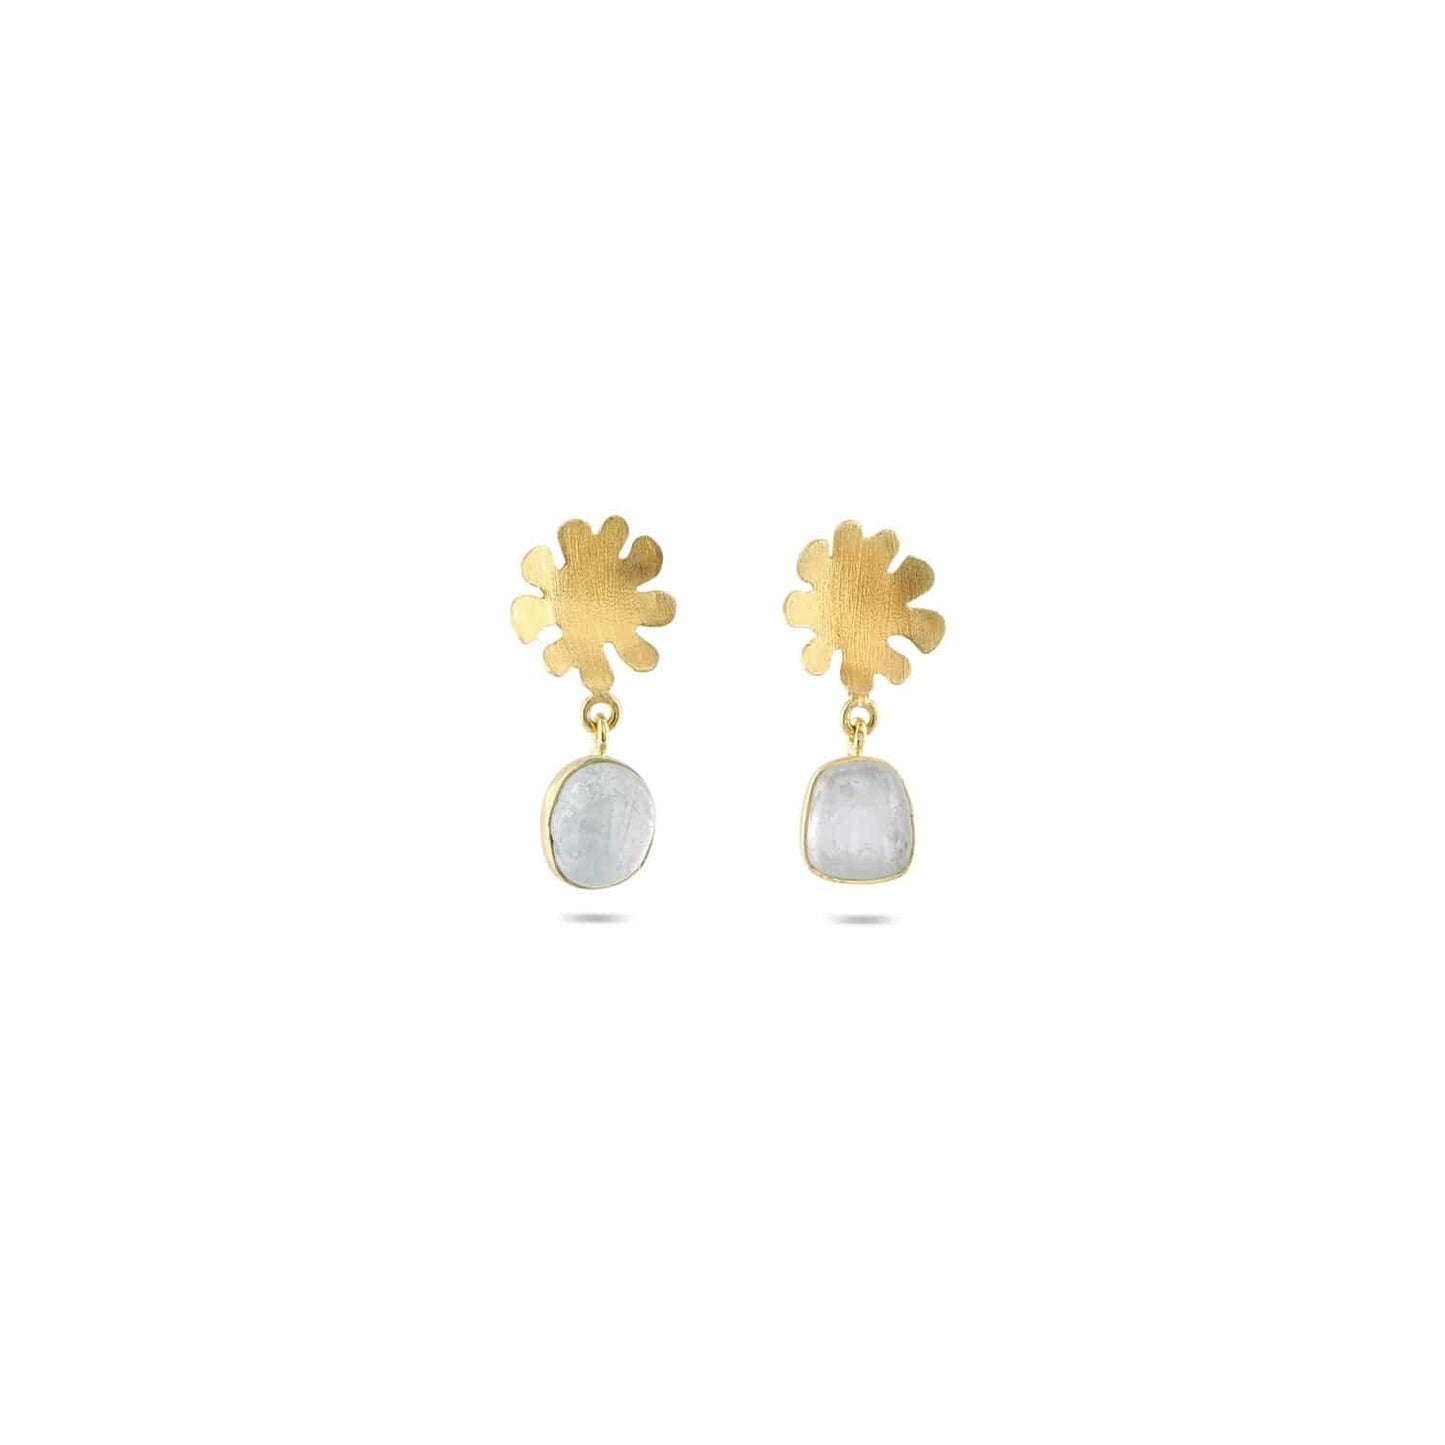 Christine Bekaert Jewelry Earring Little Ocean Drops